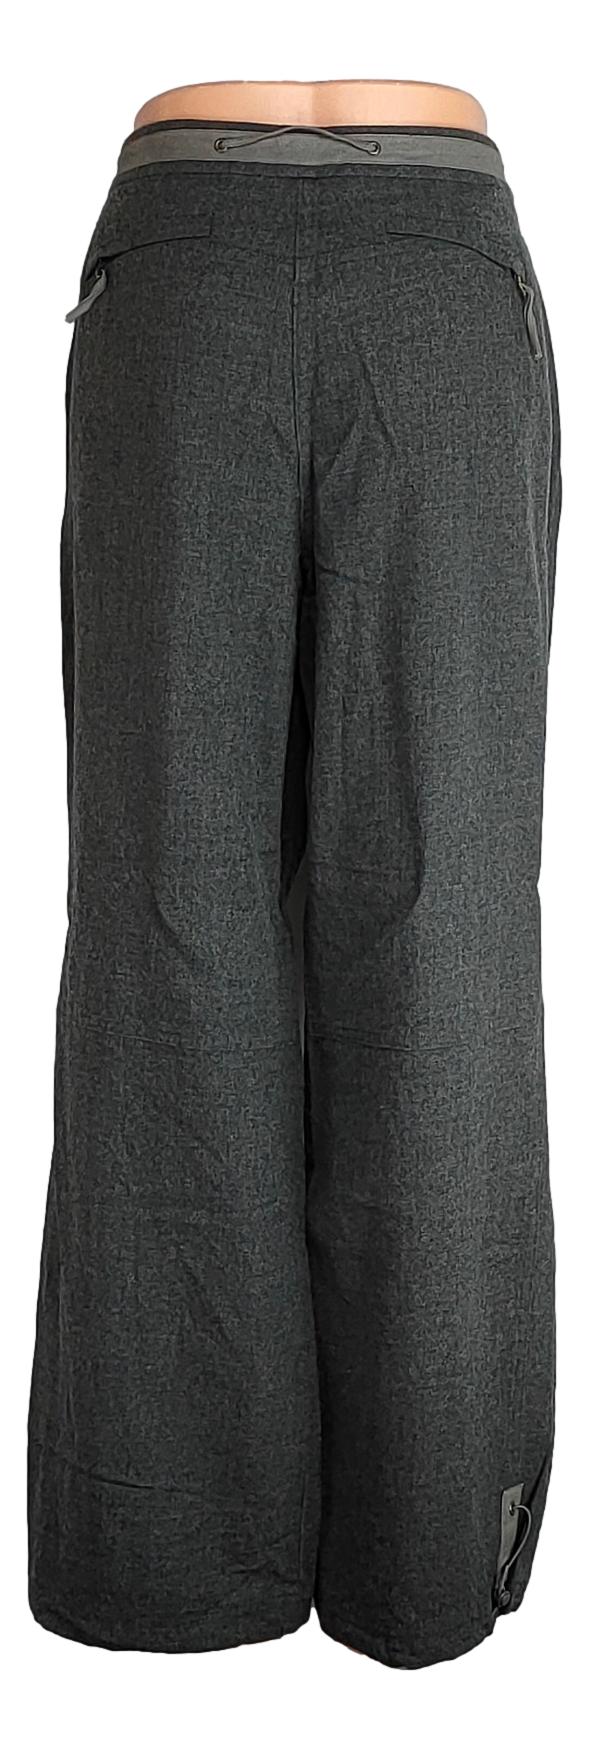 Pantalon Gardeur - taille 40